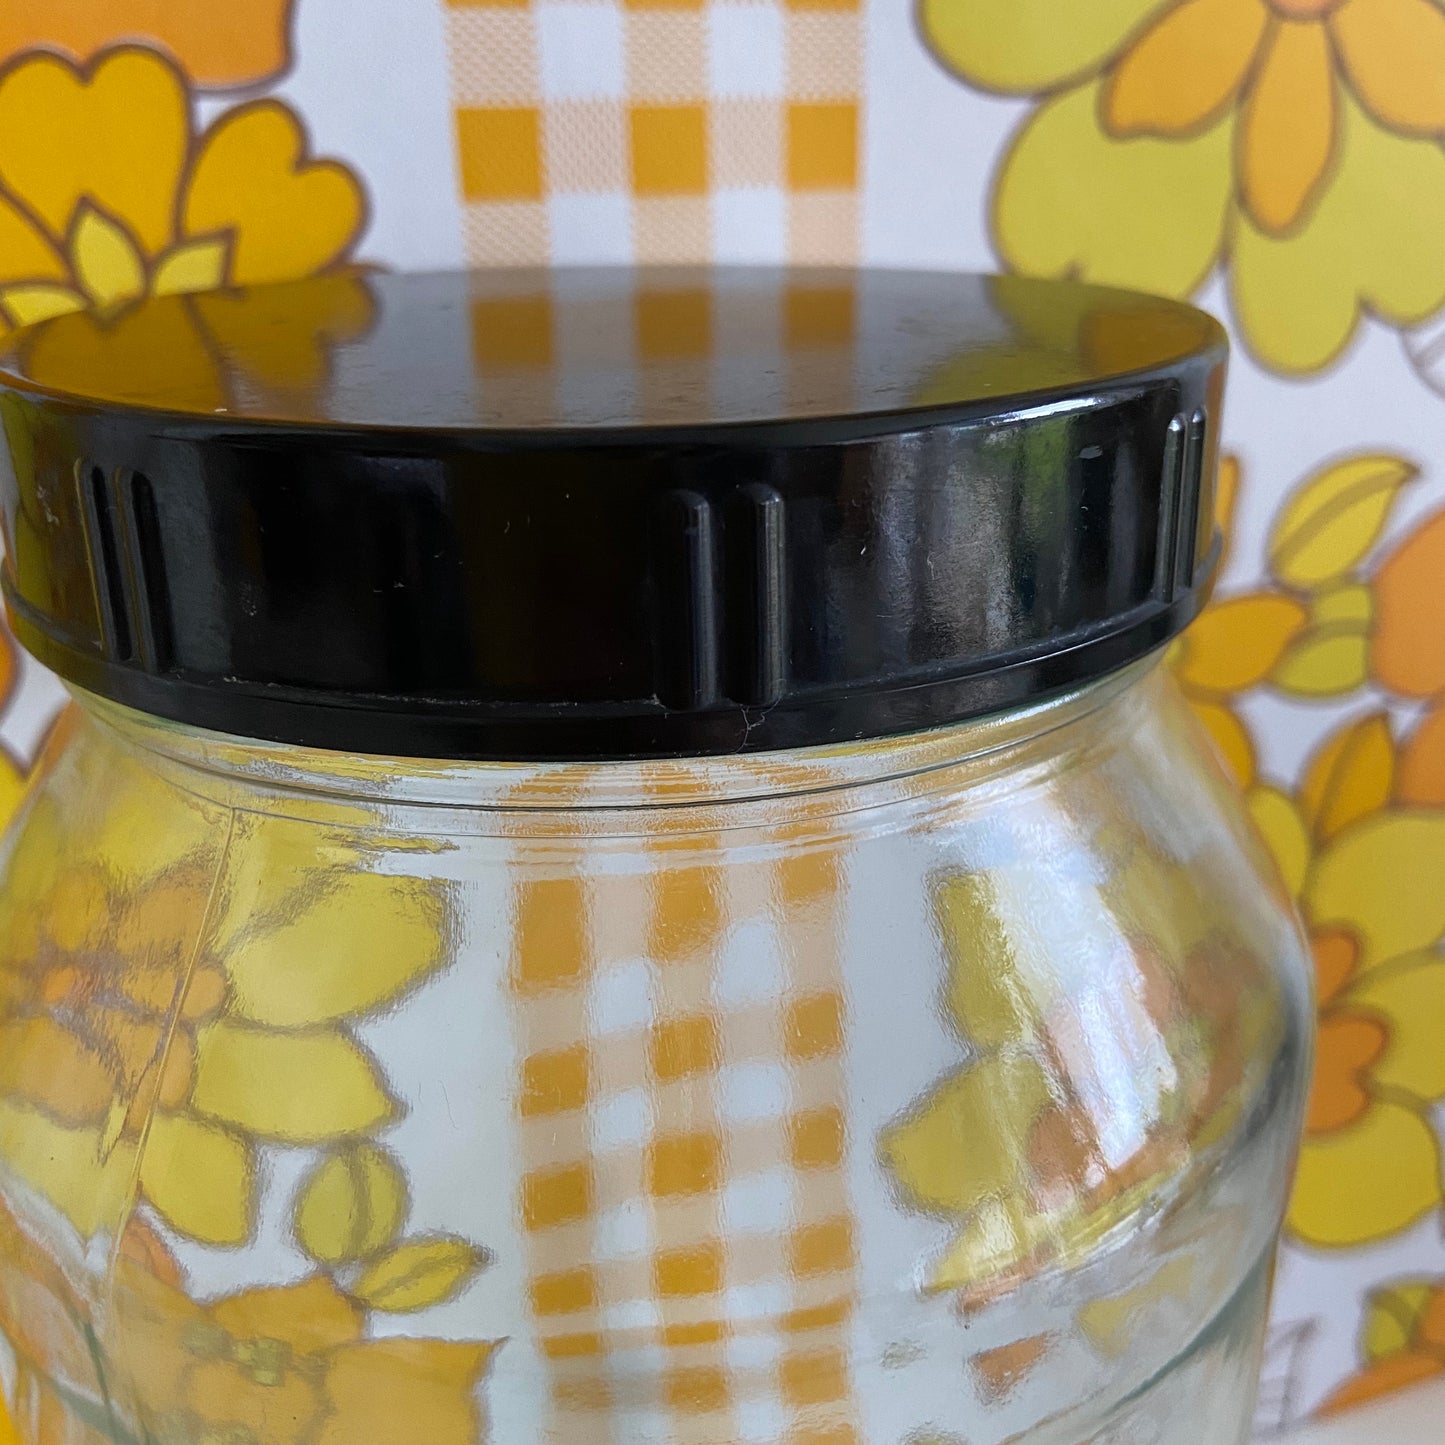 Large Vintage Jar Black Plastic LID Retro Kitchen Storage BUTTONS Etc